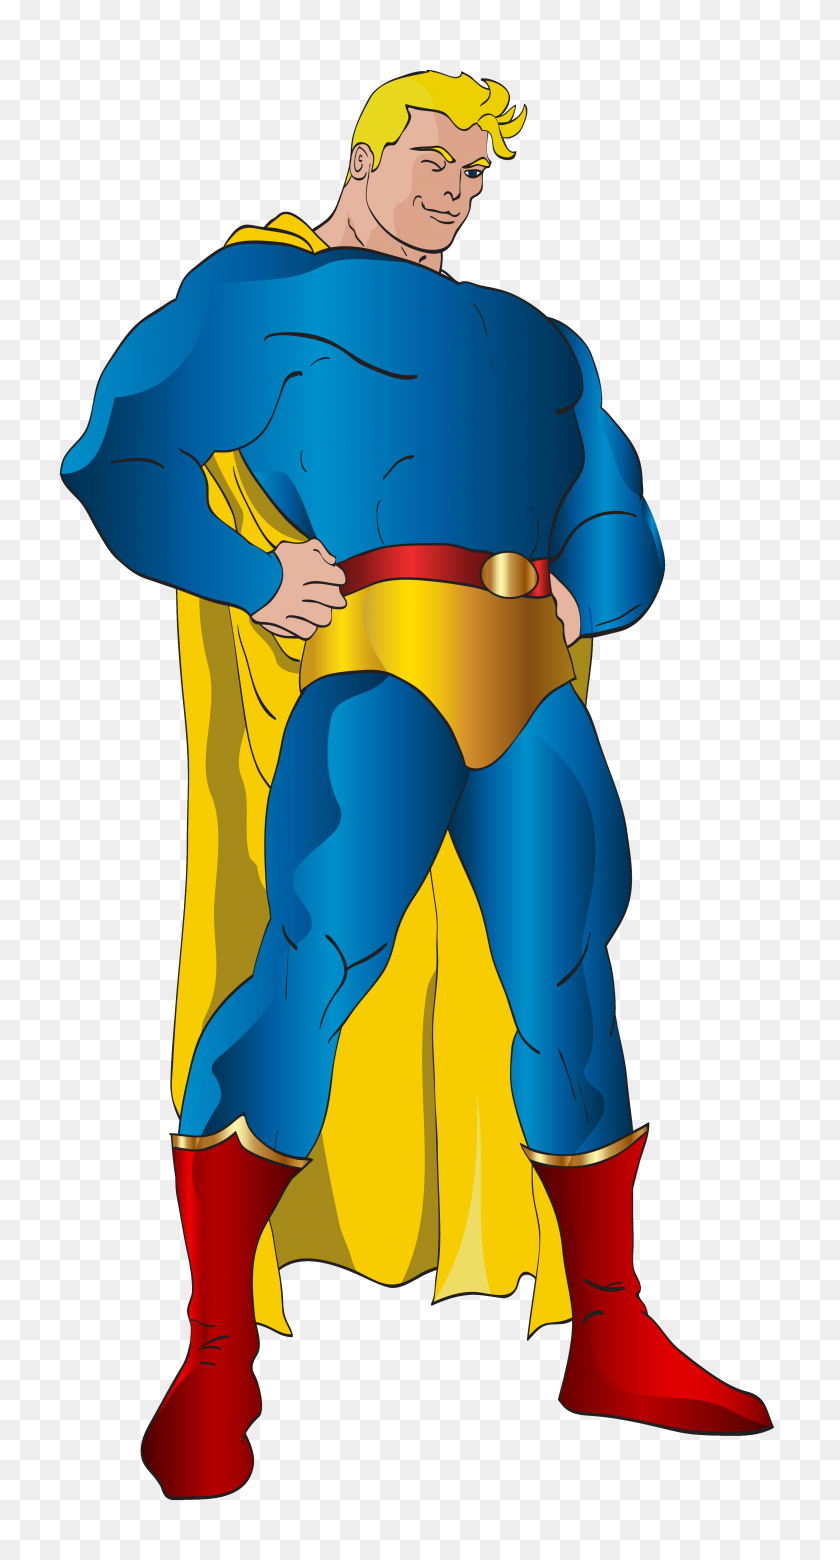 3206x6166 Superman De Dibujos Animados De Color Amarillo Prendas De Vestir Exteriores De La Ilustración - La Liga De La Justicia De Imágenes Prediseñadas